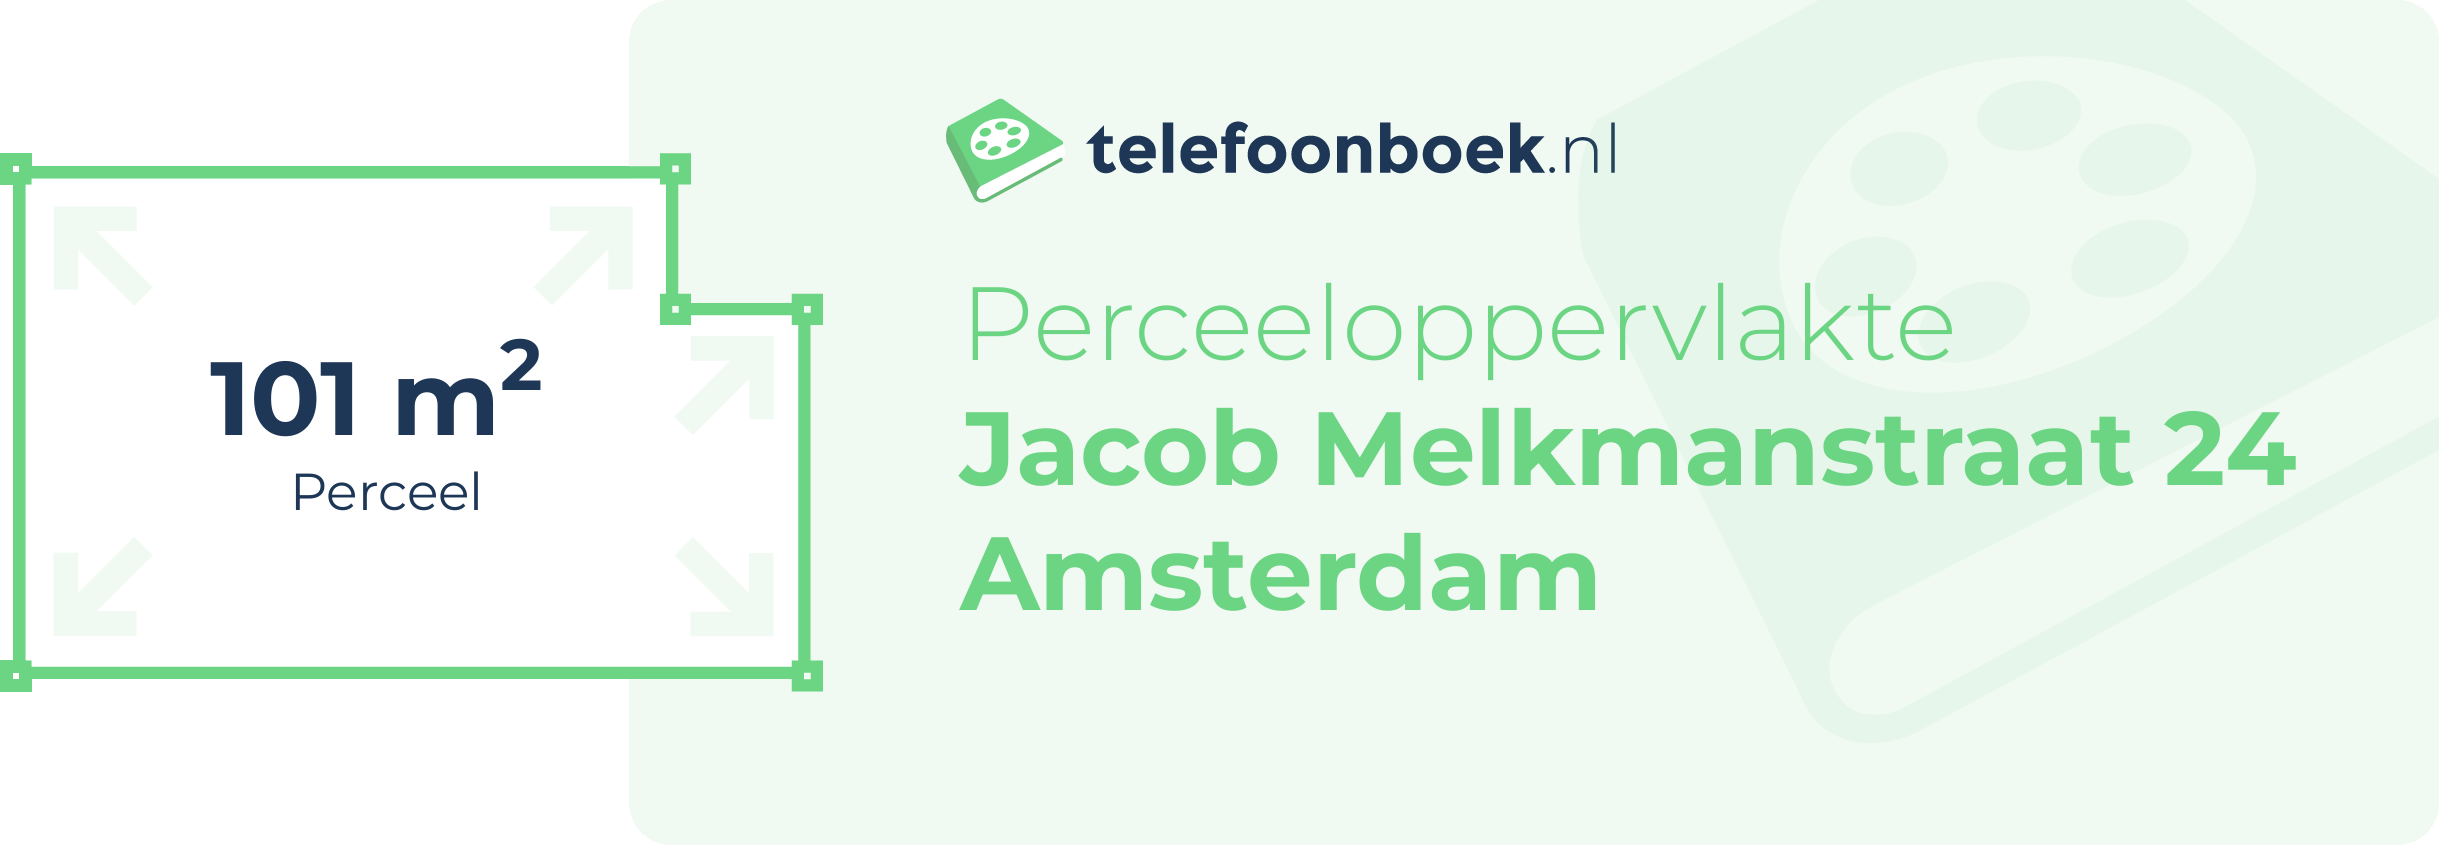 Perceeloppervlakte Jacob Melkmanstraat 24 Amsterdam